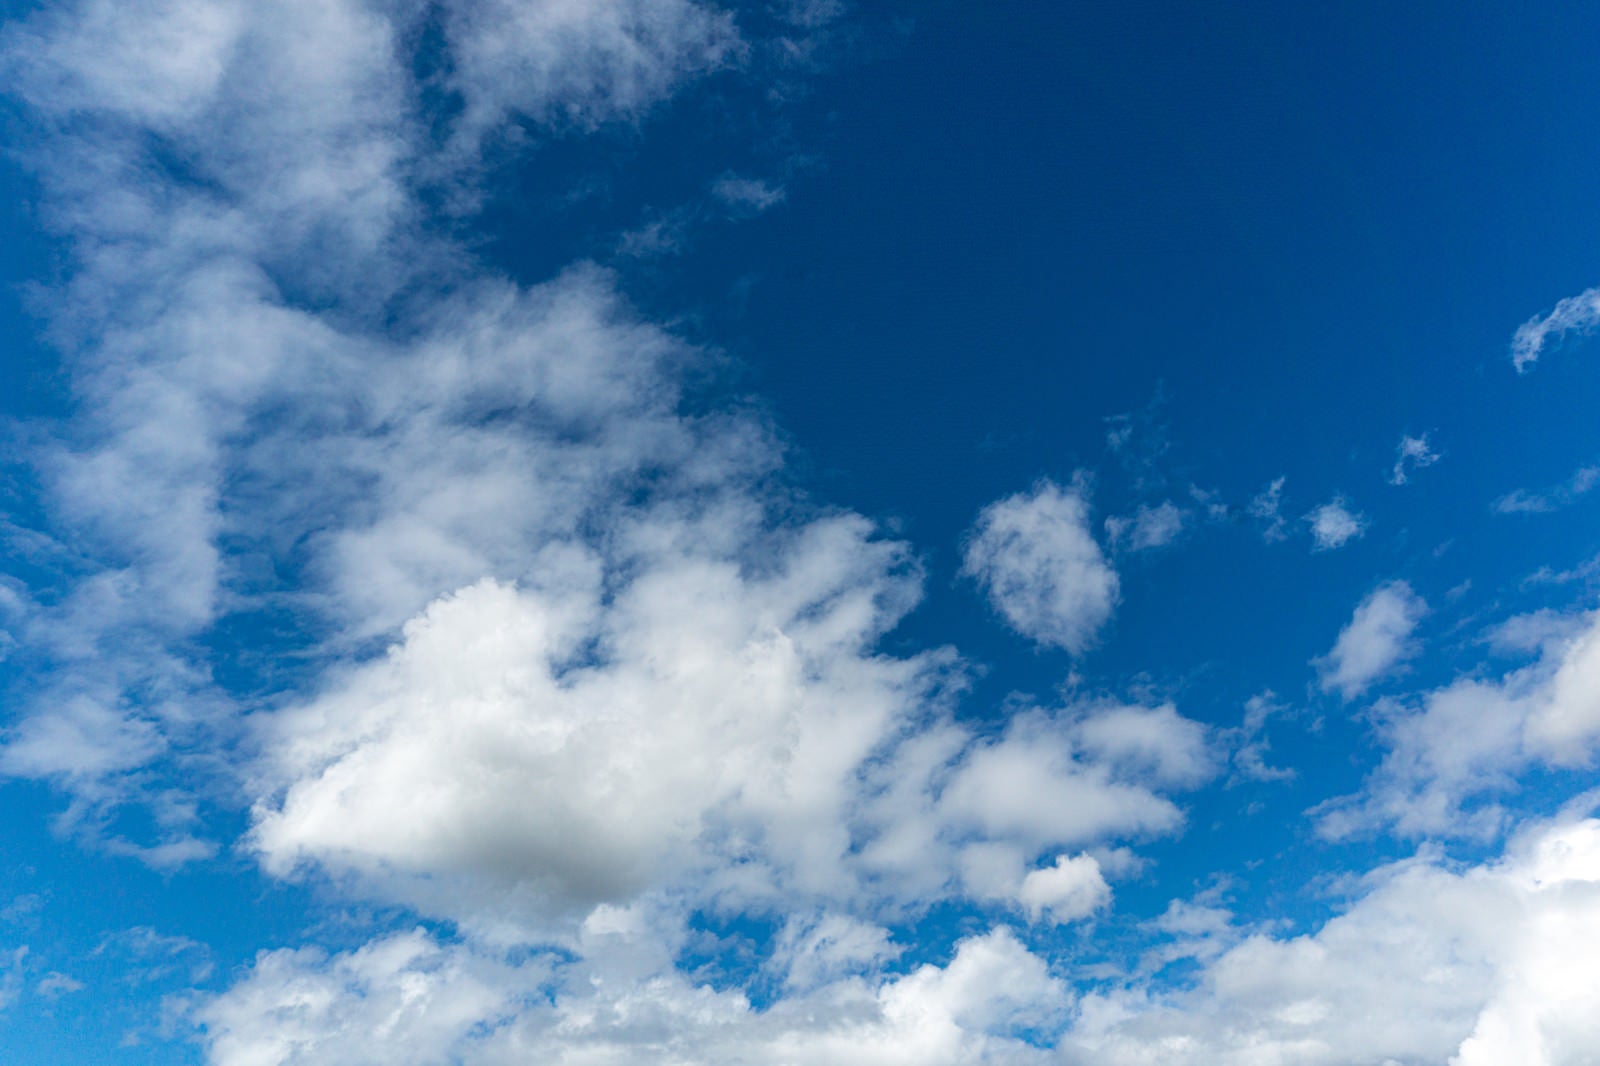 「プカプカと浮かぶ雲と青い空」の写真